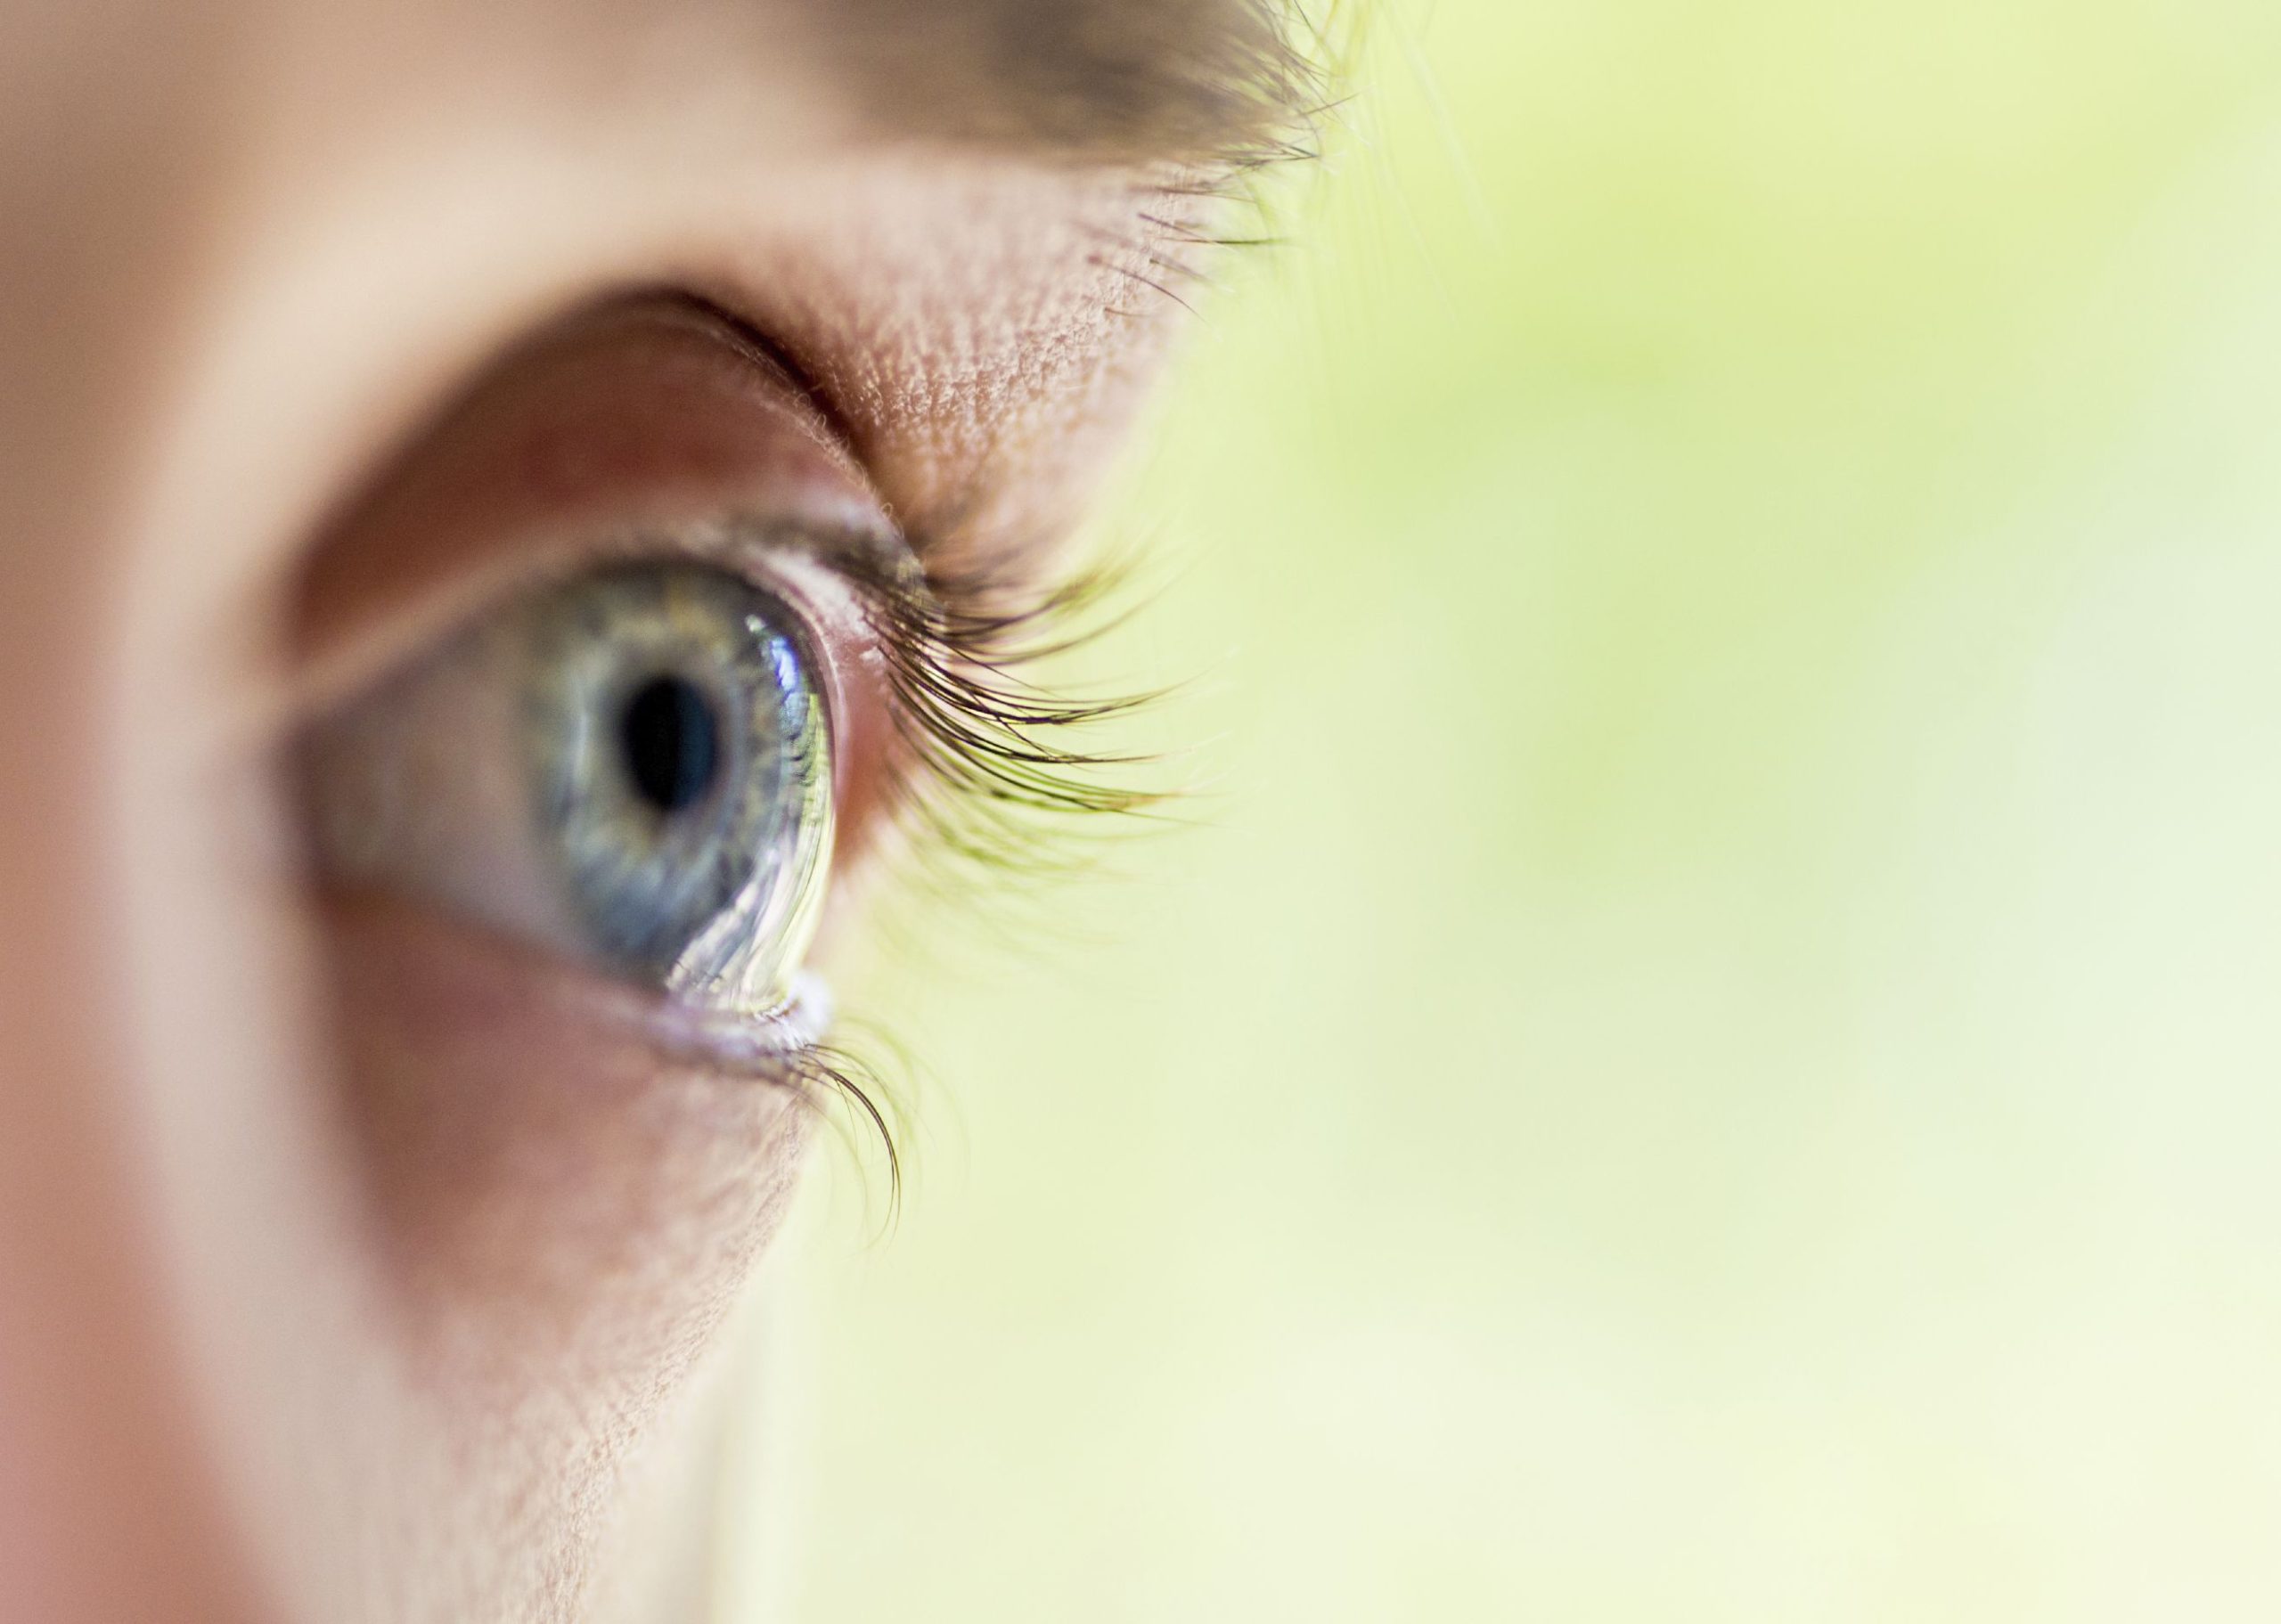 عمل لیزیک چشم - شماره چشم برای عمل لیزیک